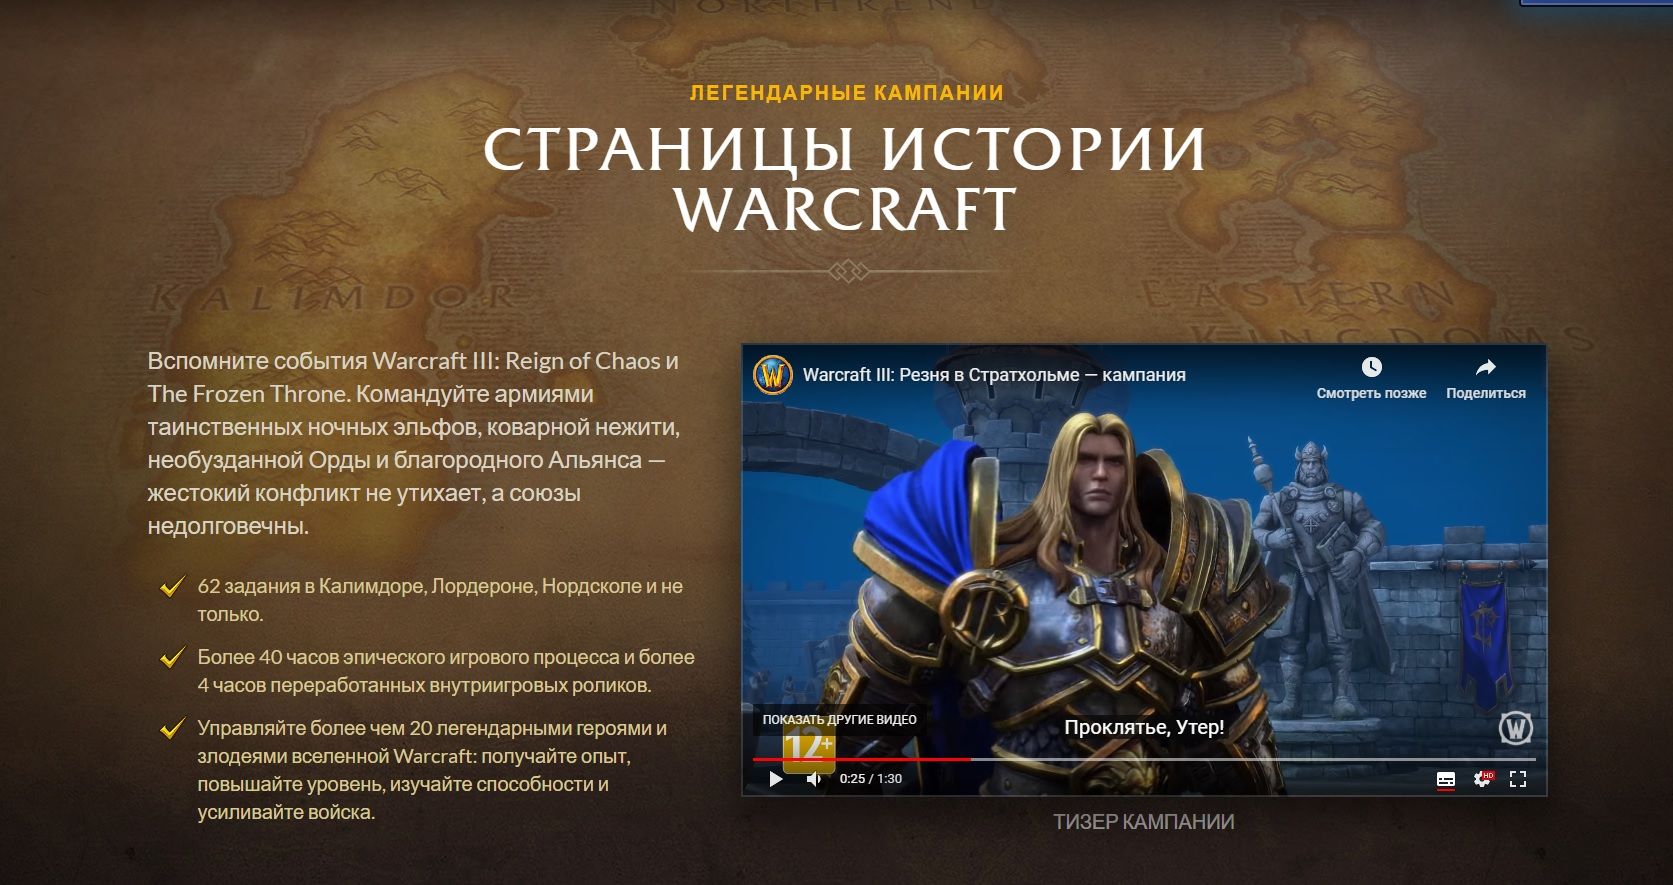 Российская версия страницы Reforged. Источник: playwarcraft3.com